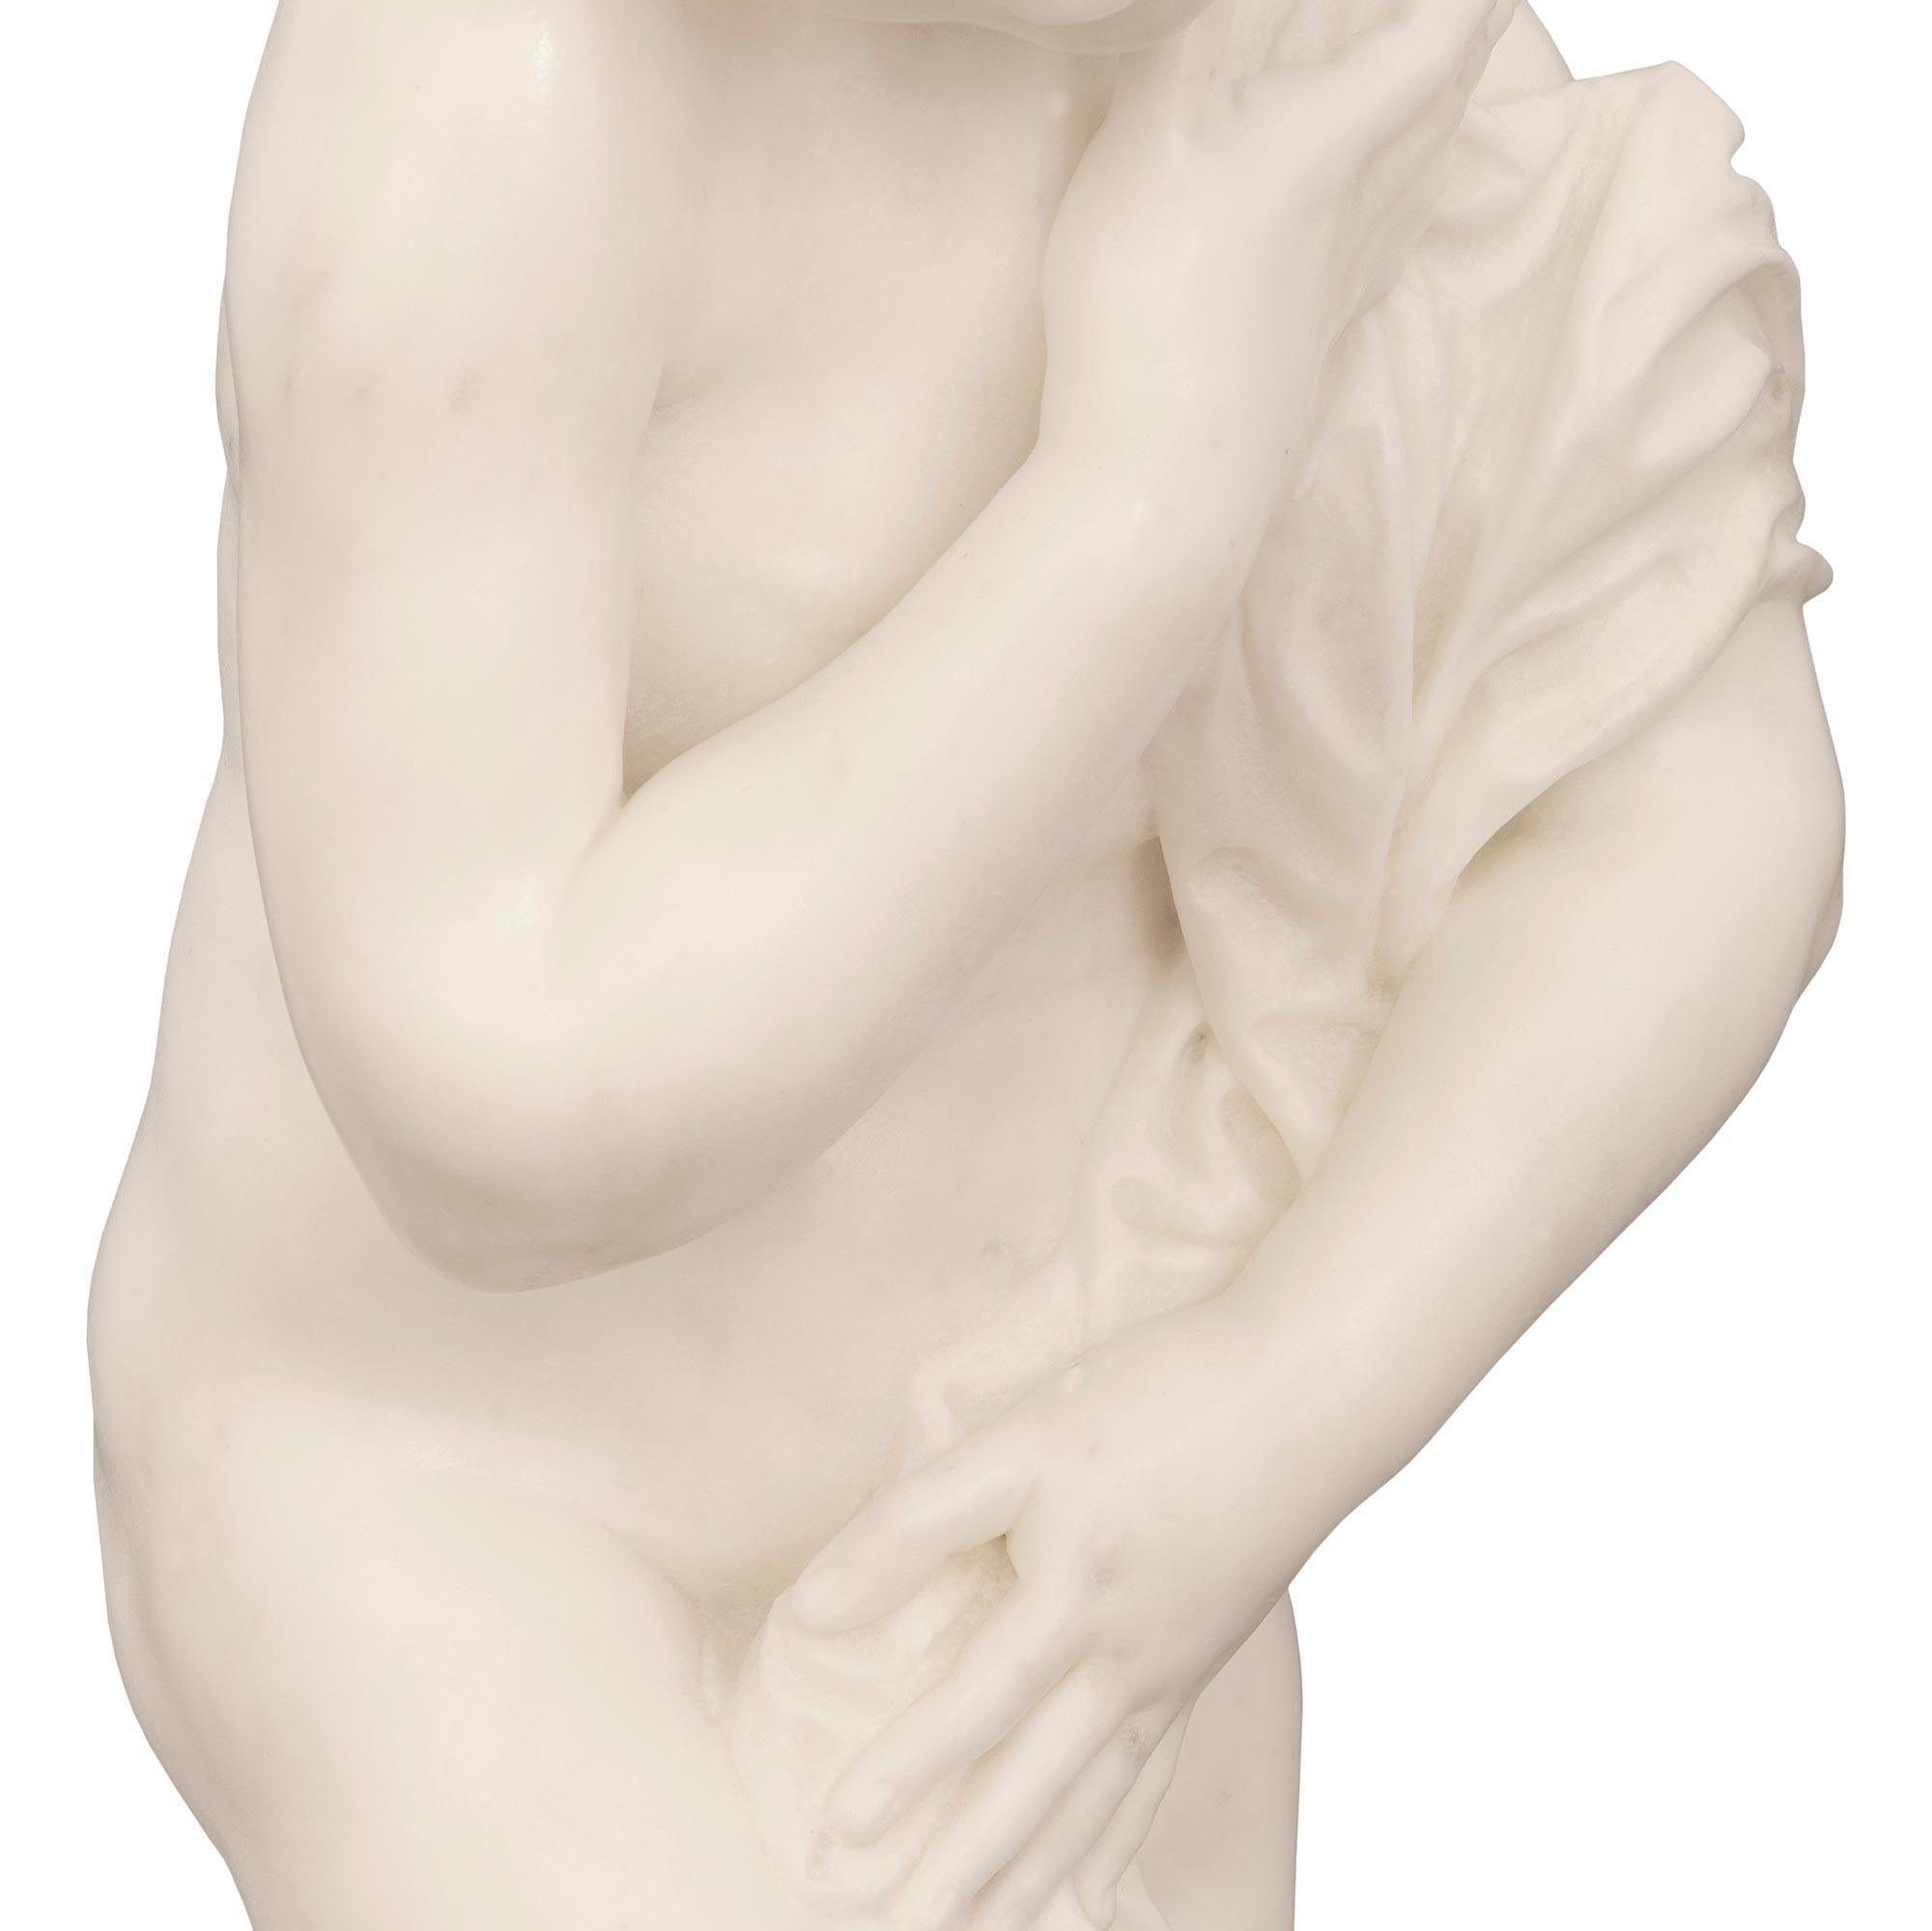 Italian 19th Century White Carrara Marble Statue Signed F. Mariotti Scul For Sale 3